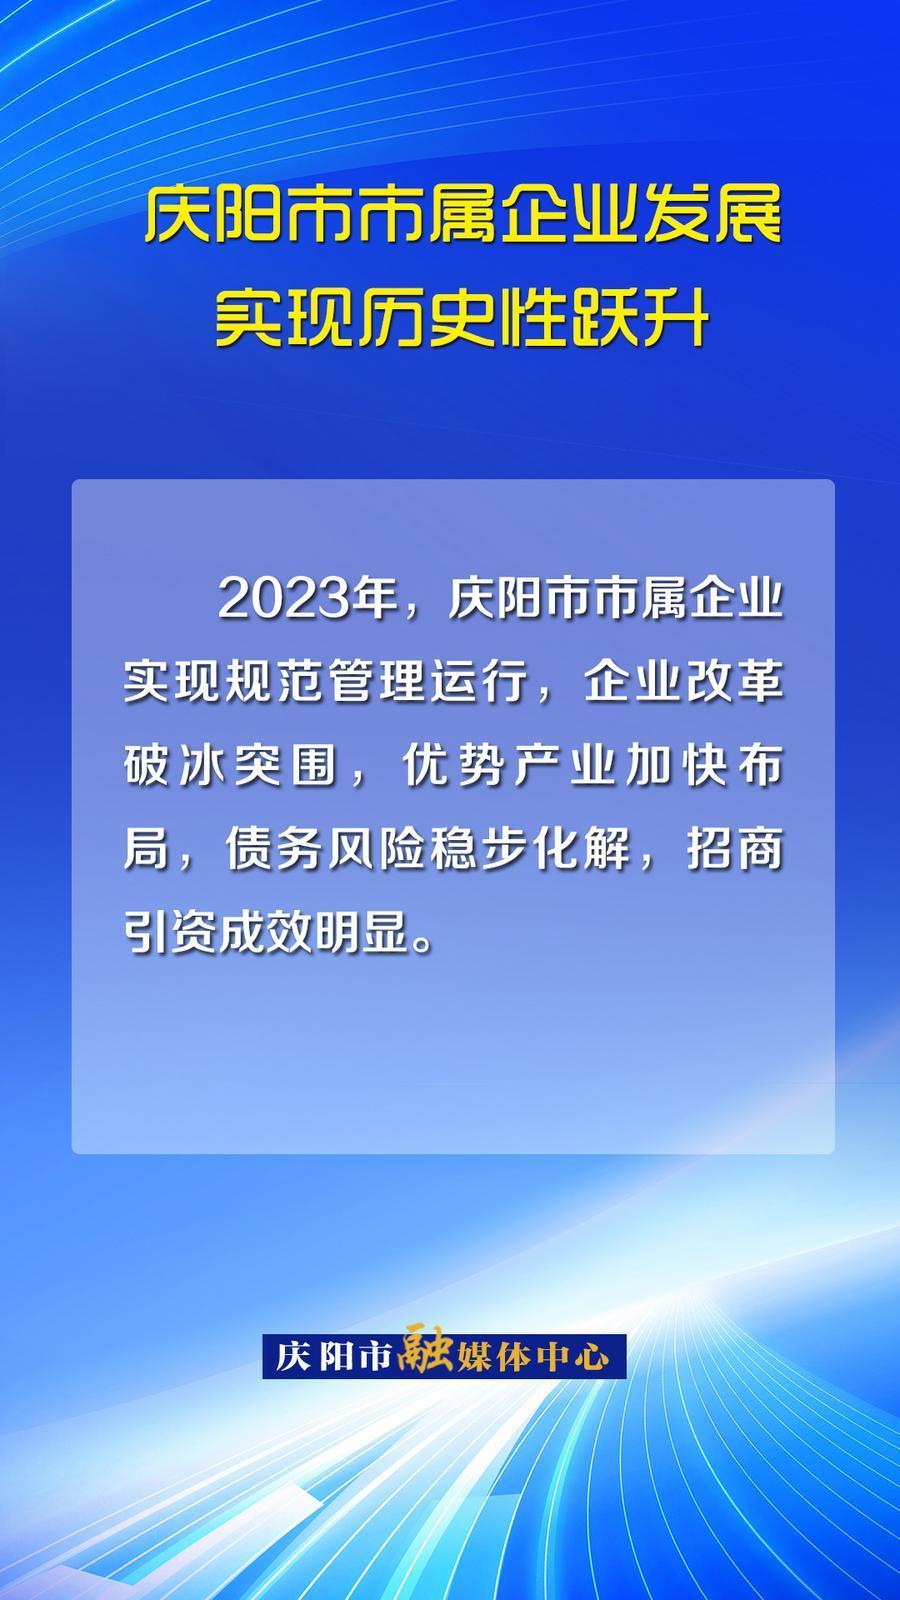 【海報】完成產值25.83億，資產總額達198.3億元！慶陽市市屬企業發展實現歷史性躍升